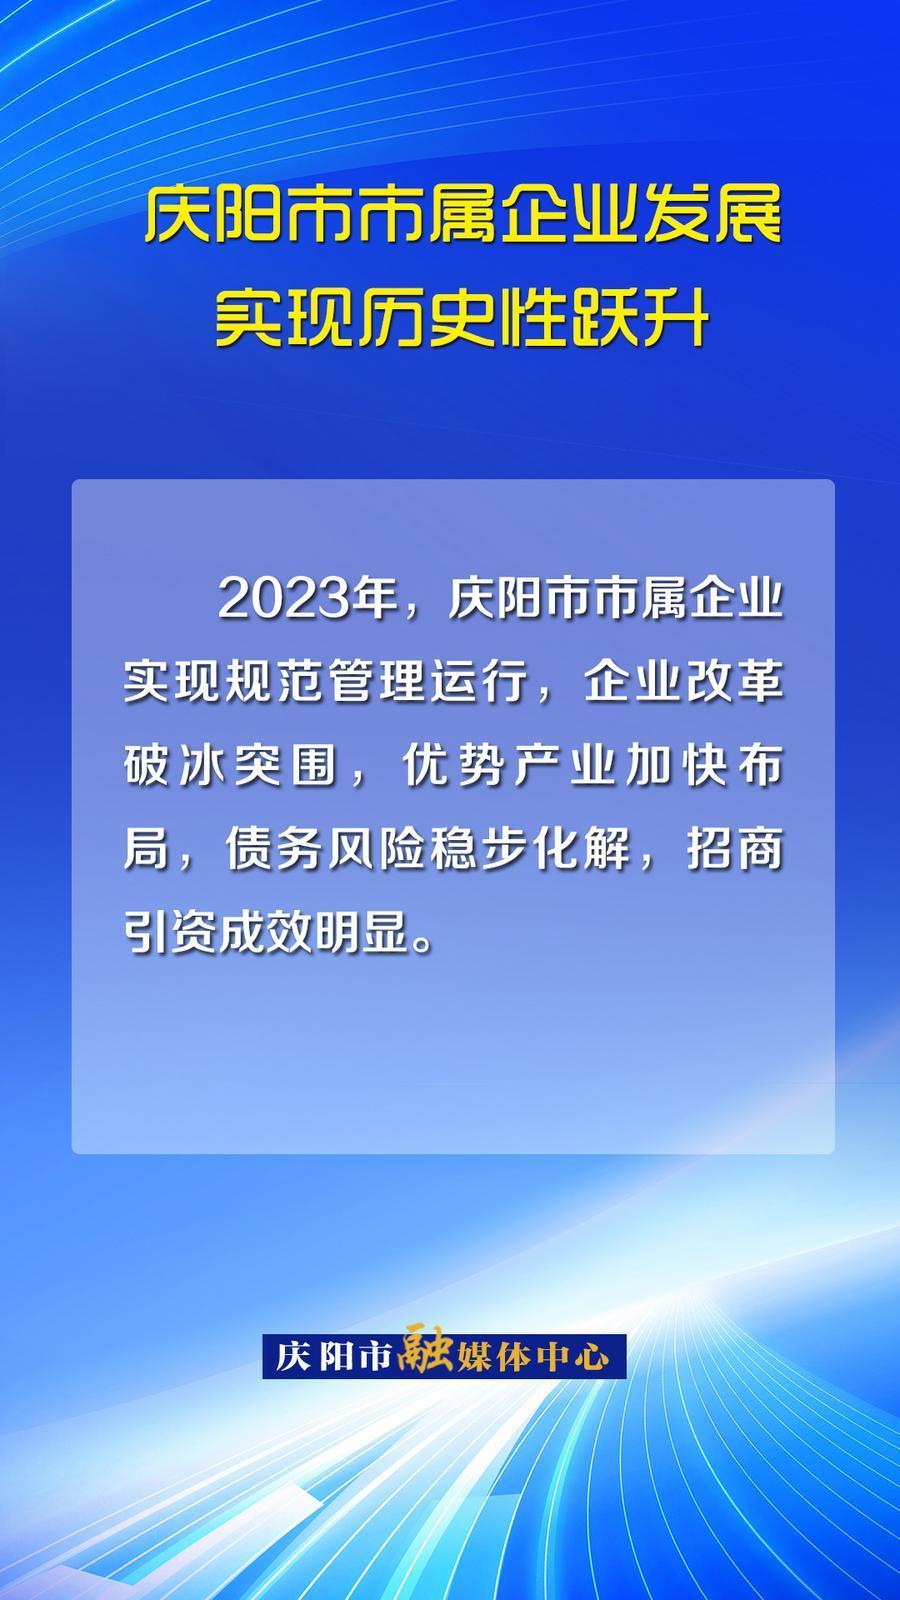 【海報】完成產值25.83億，資產總額達198.3億元！慶陽市市屬企業發展實現歷史性躍升